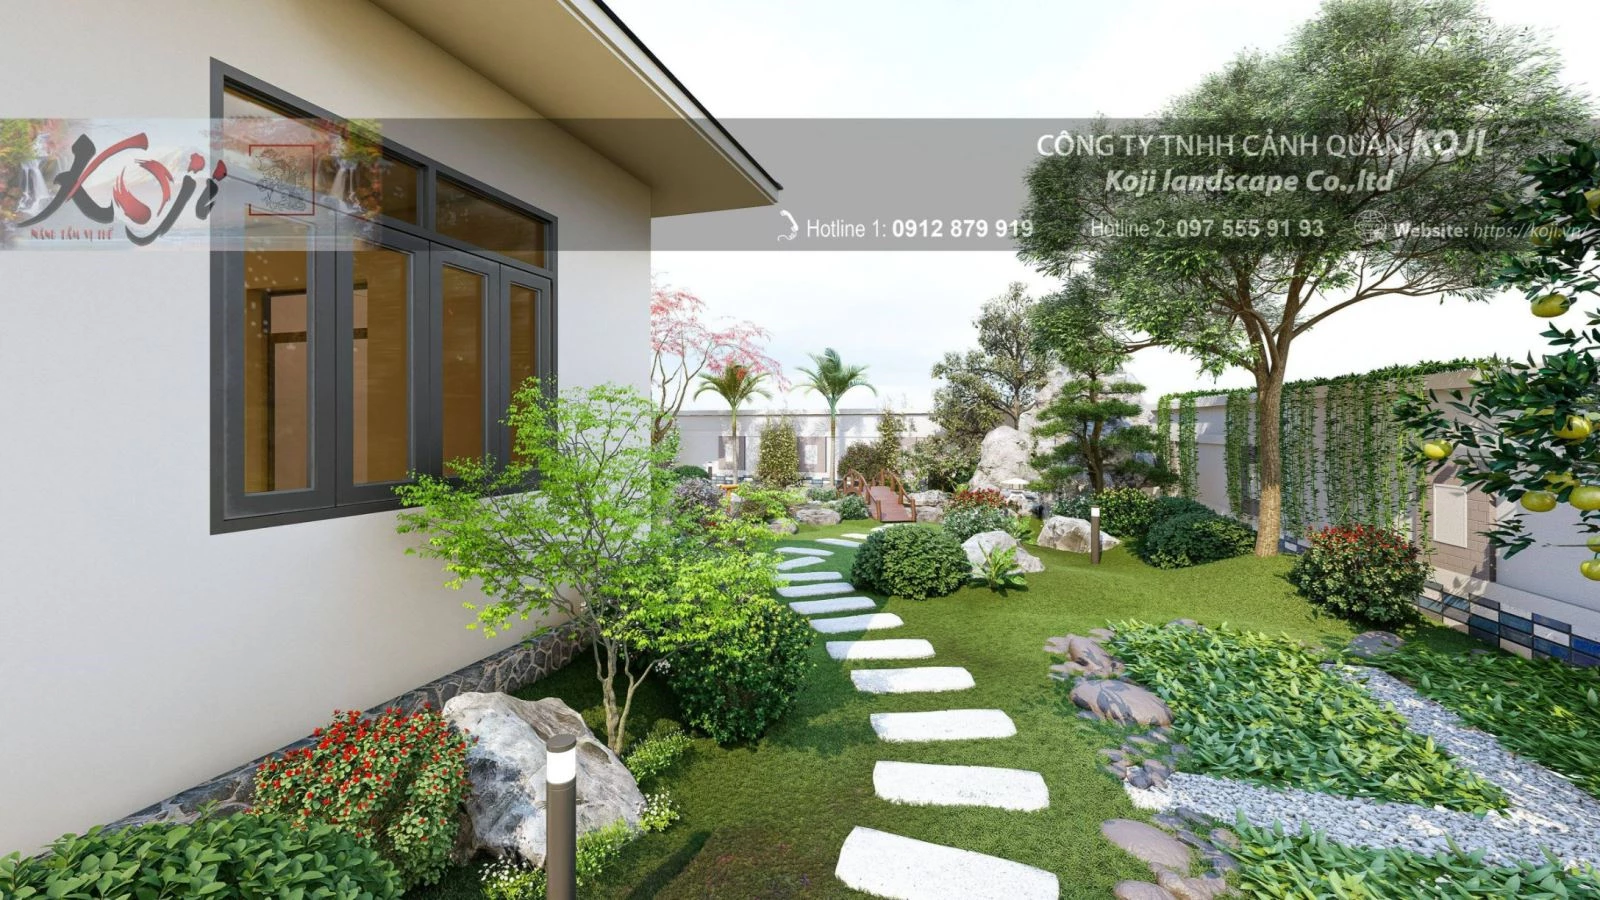  Thiết kế sân vườn 200m2 - Không gian xanh ngay trong chính ngôi nhà của bạn